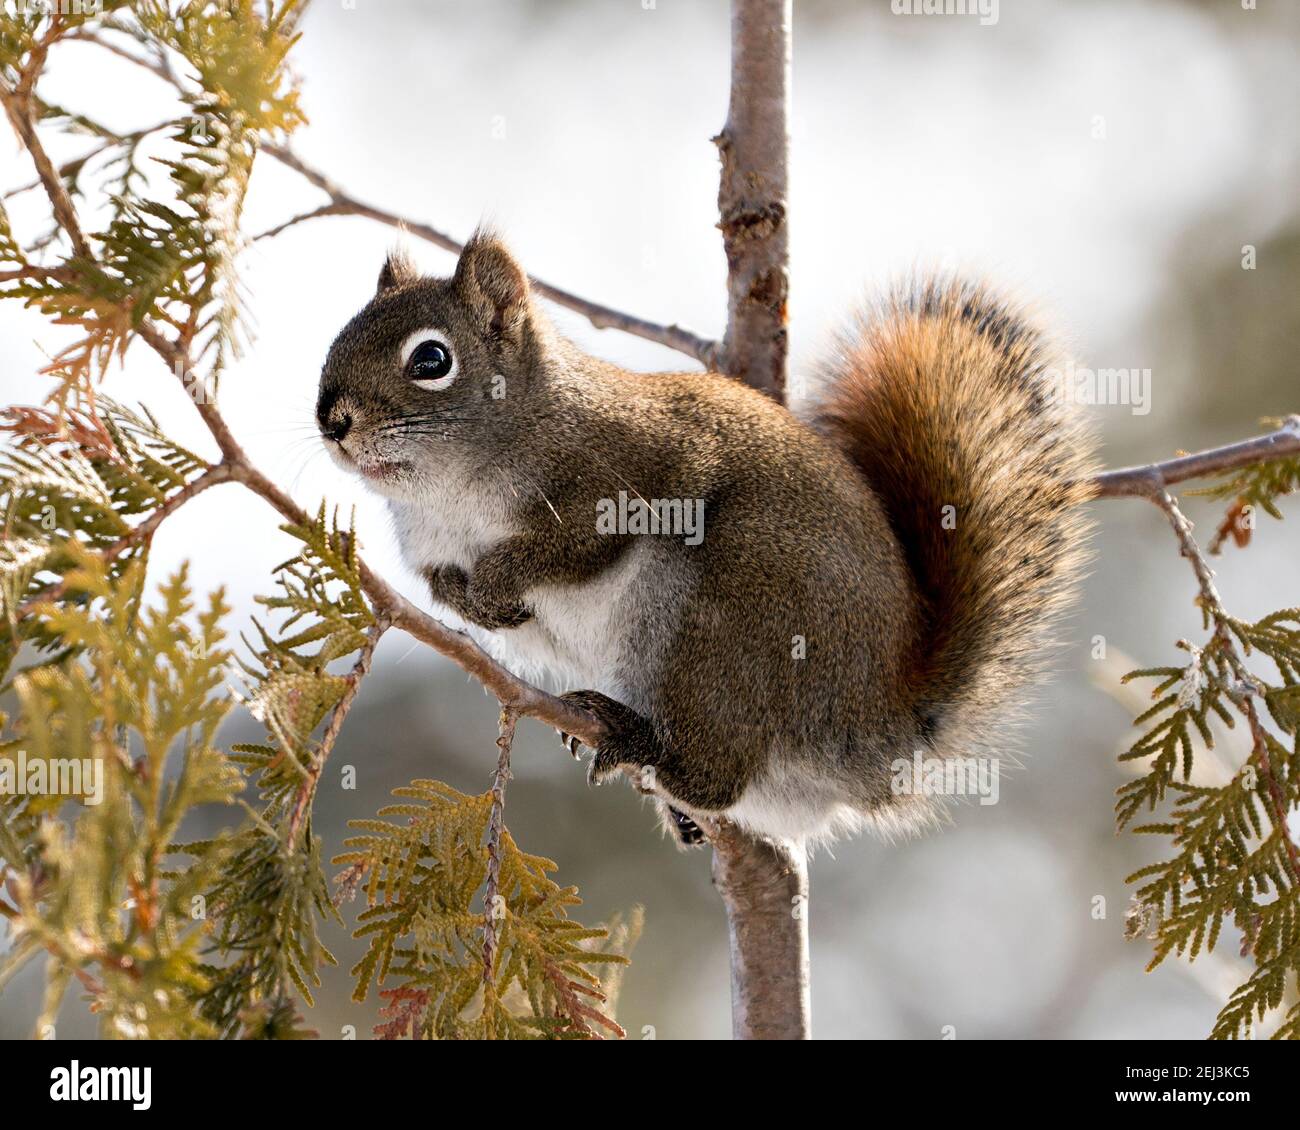 Vista ravvicinata del profilo dello scoiattolo nella foresta in piedi su un ramo di cedro con uno sfondo sfocato che mostra la sua pelliccia marrone, zampe, coda bushy. Immagine. Foto Stock